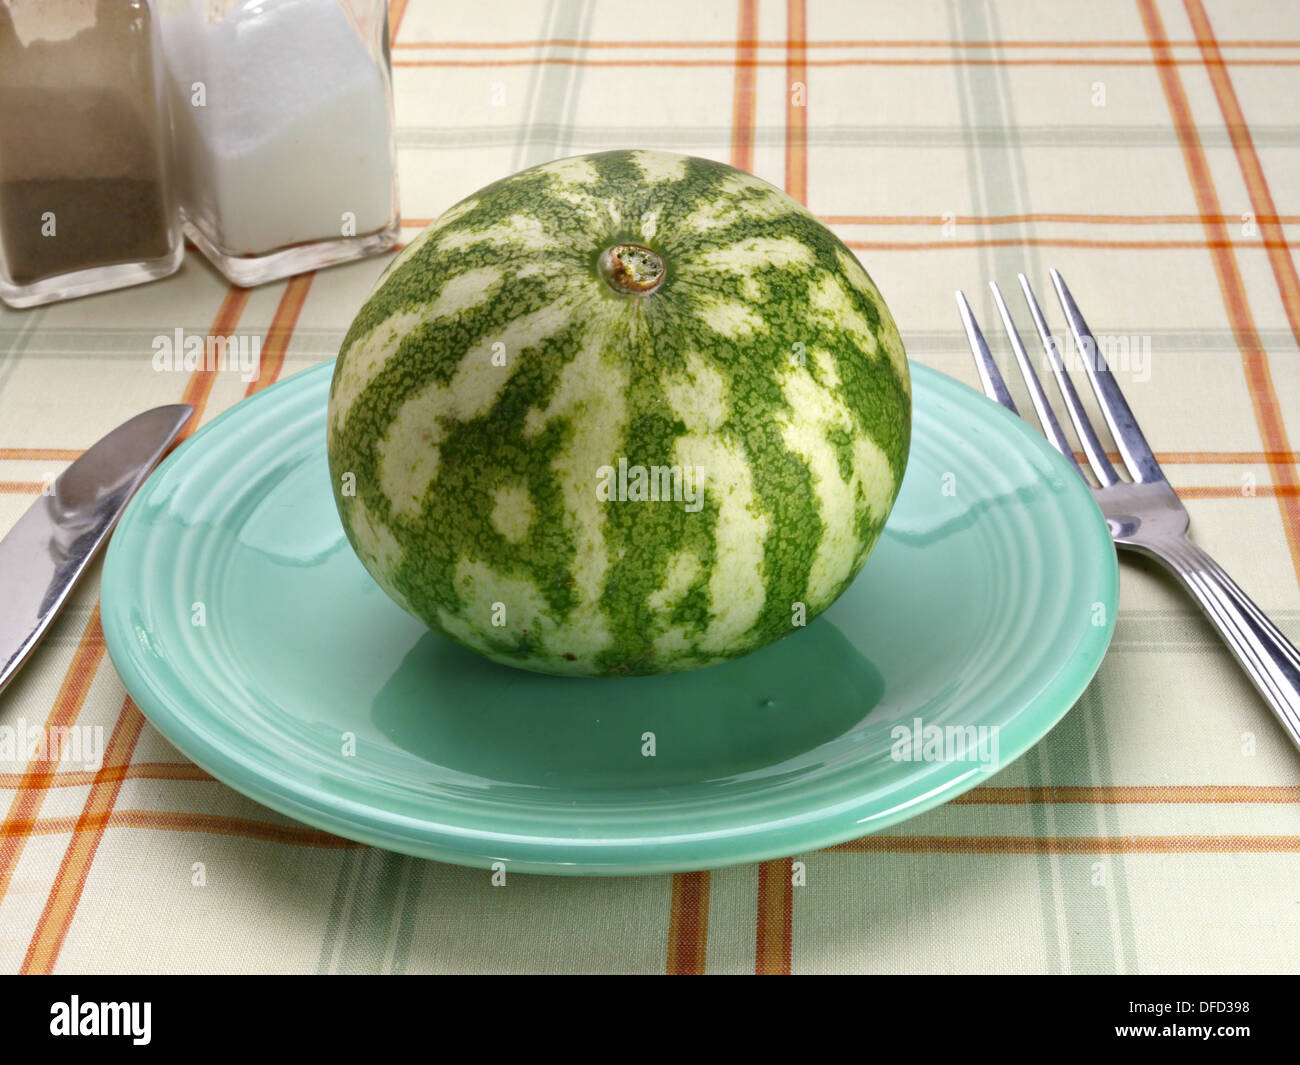 Un petit tour watermelon est assis sur une soucoupe volante bleu sur une table. Banque D'Images